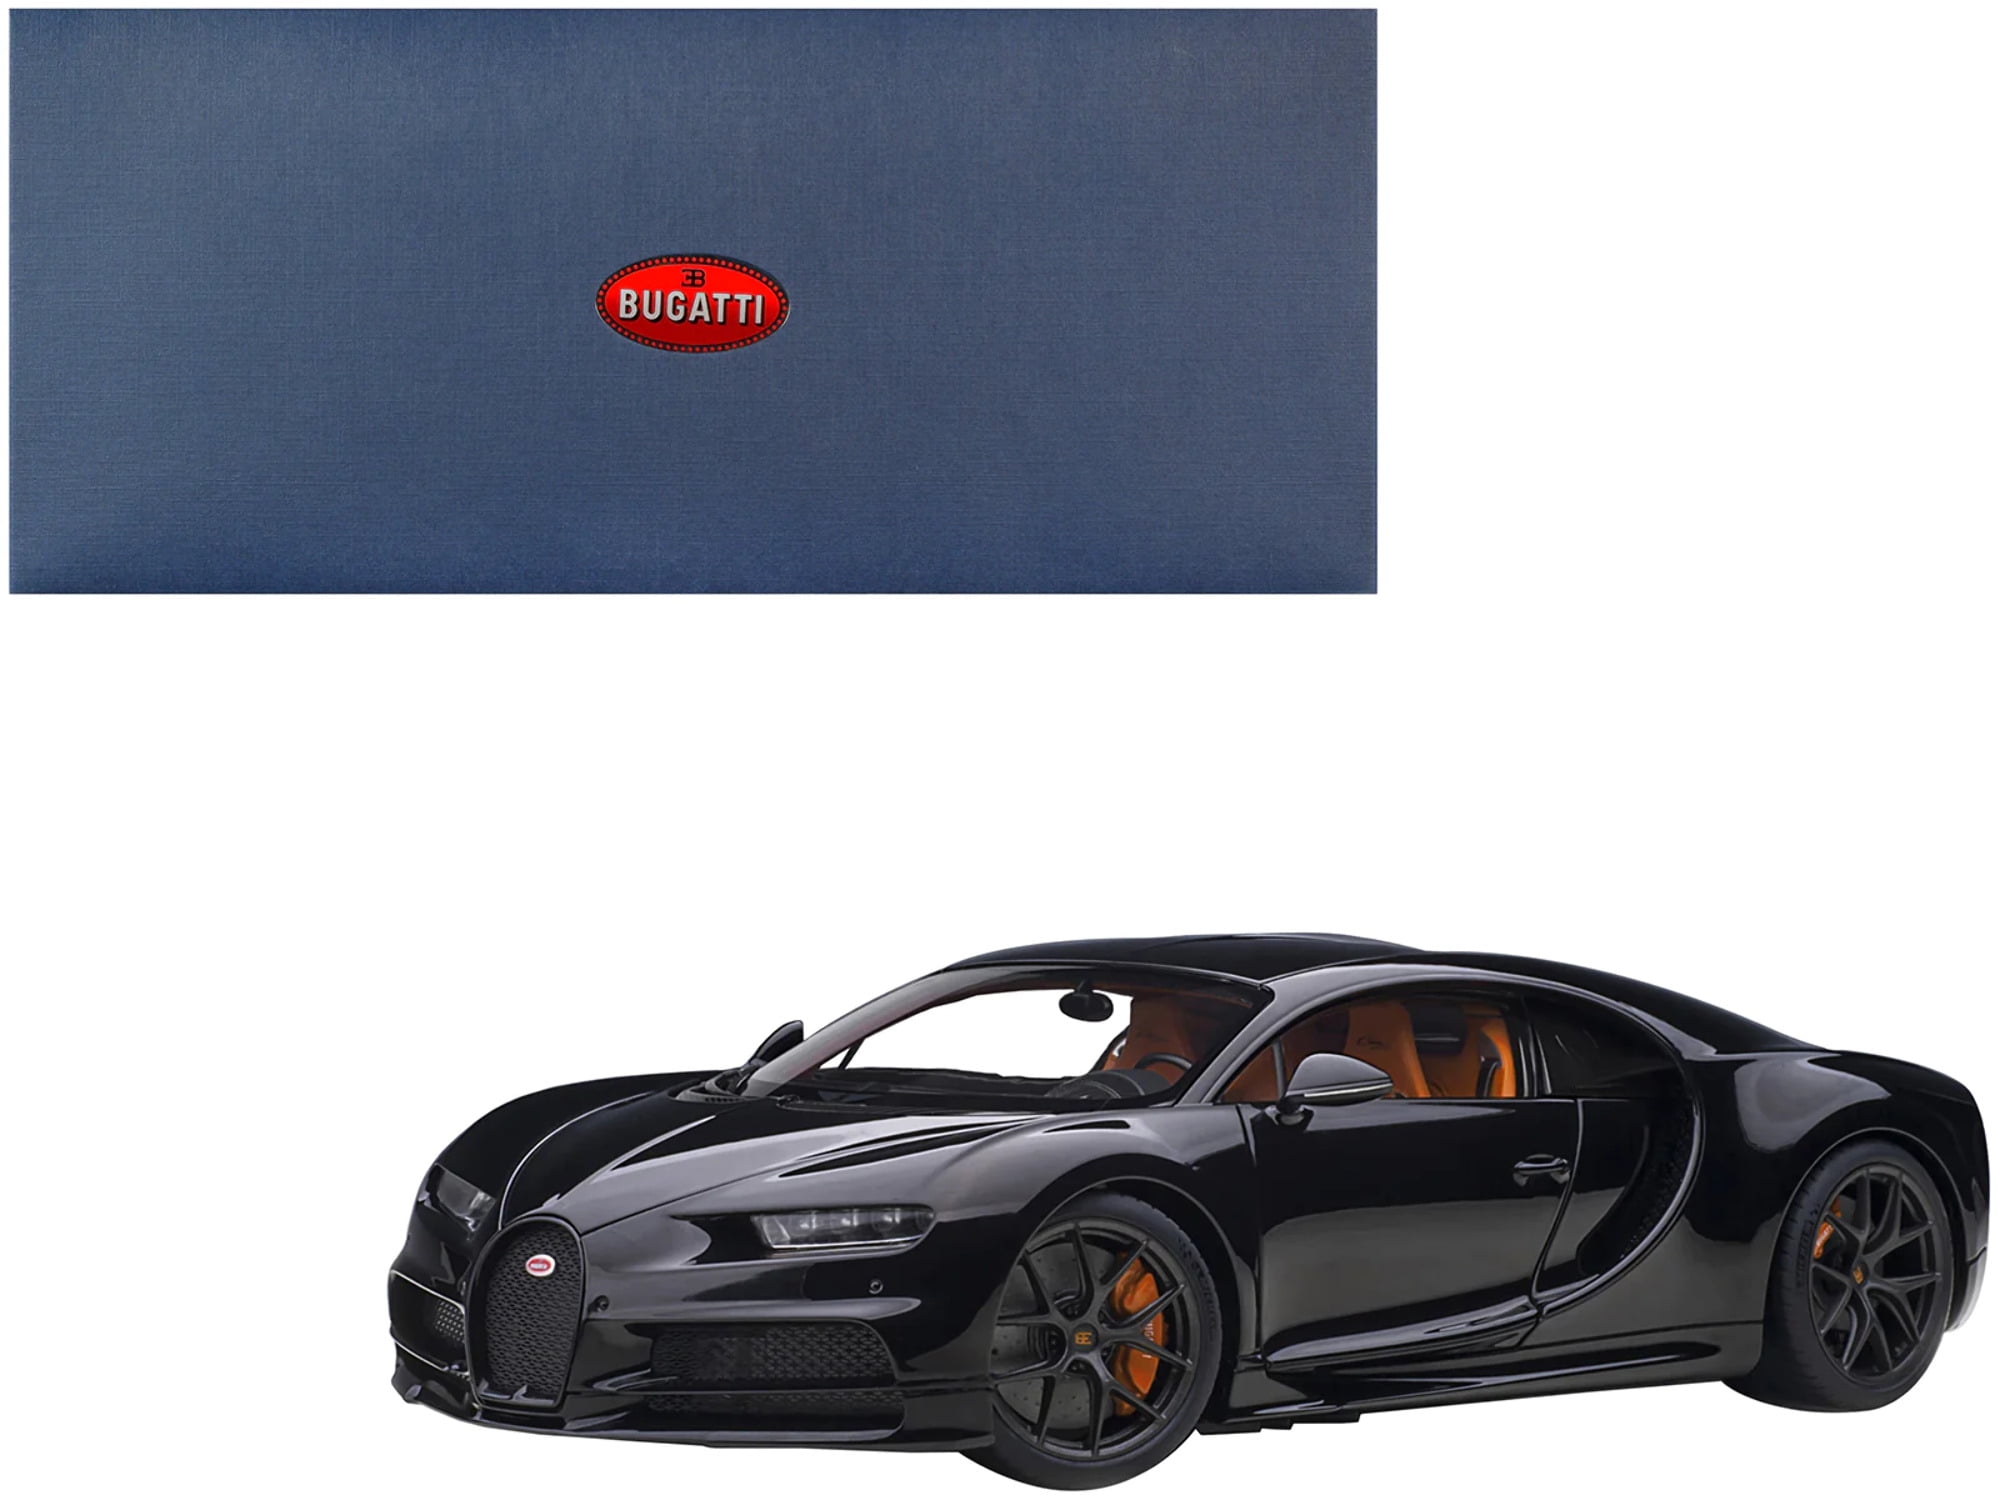 Picture of Autoart 70999 Nocturne Black 1 by 18 Scale Model Car for 2019 Bugatti Chiron Sport